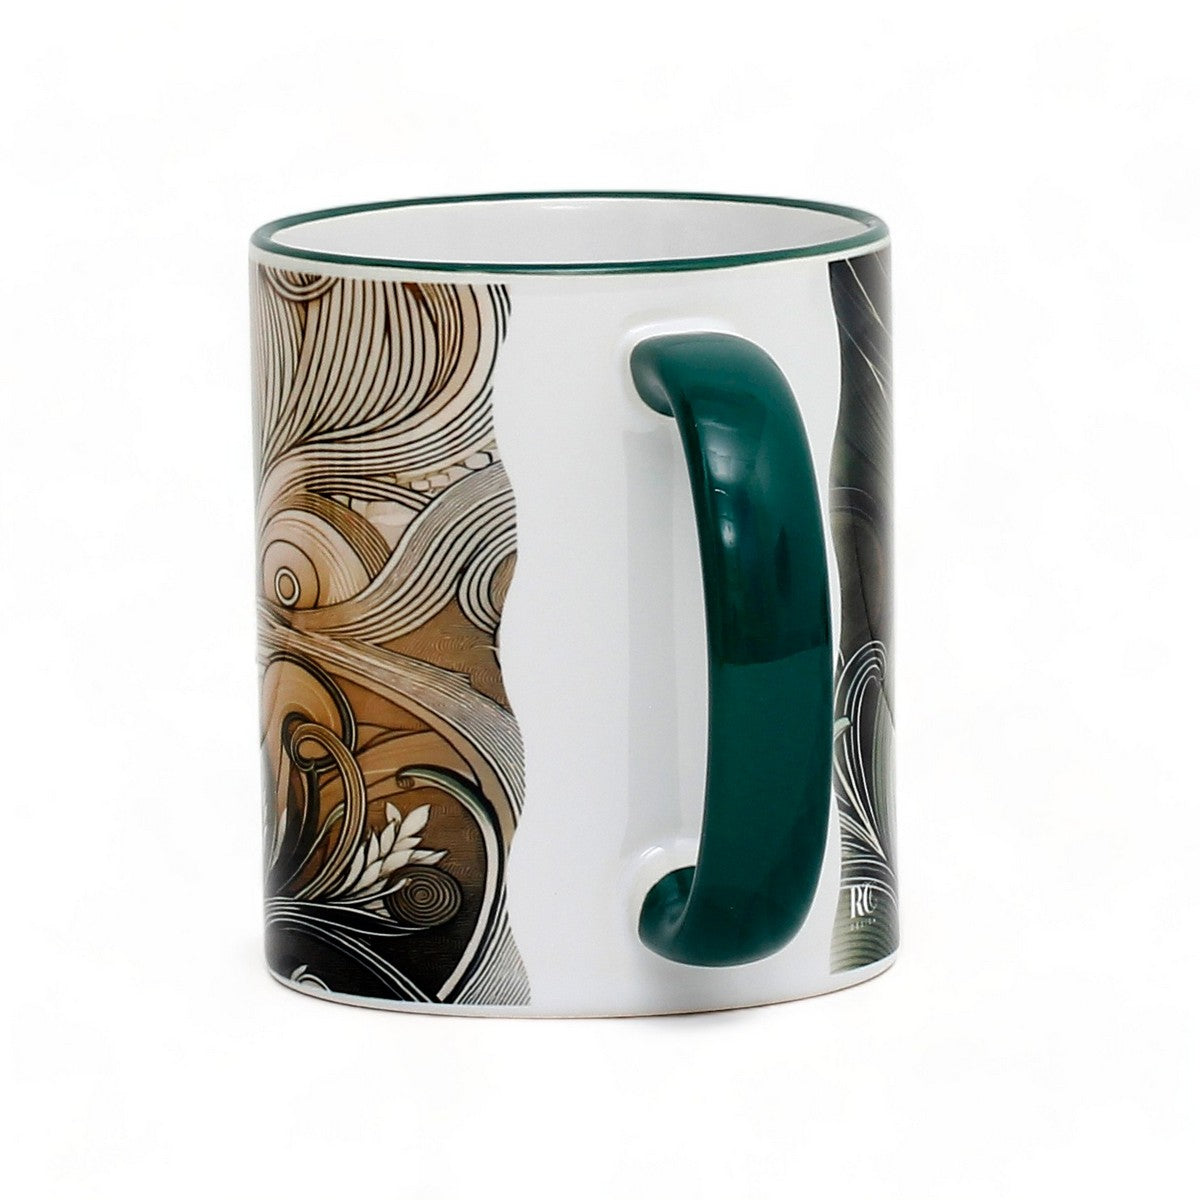 SUBLIMART: Mug Whirl Elegance Mug - by RC Design